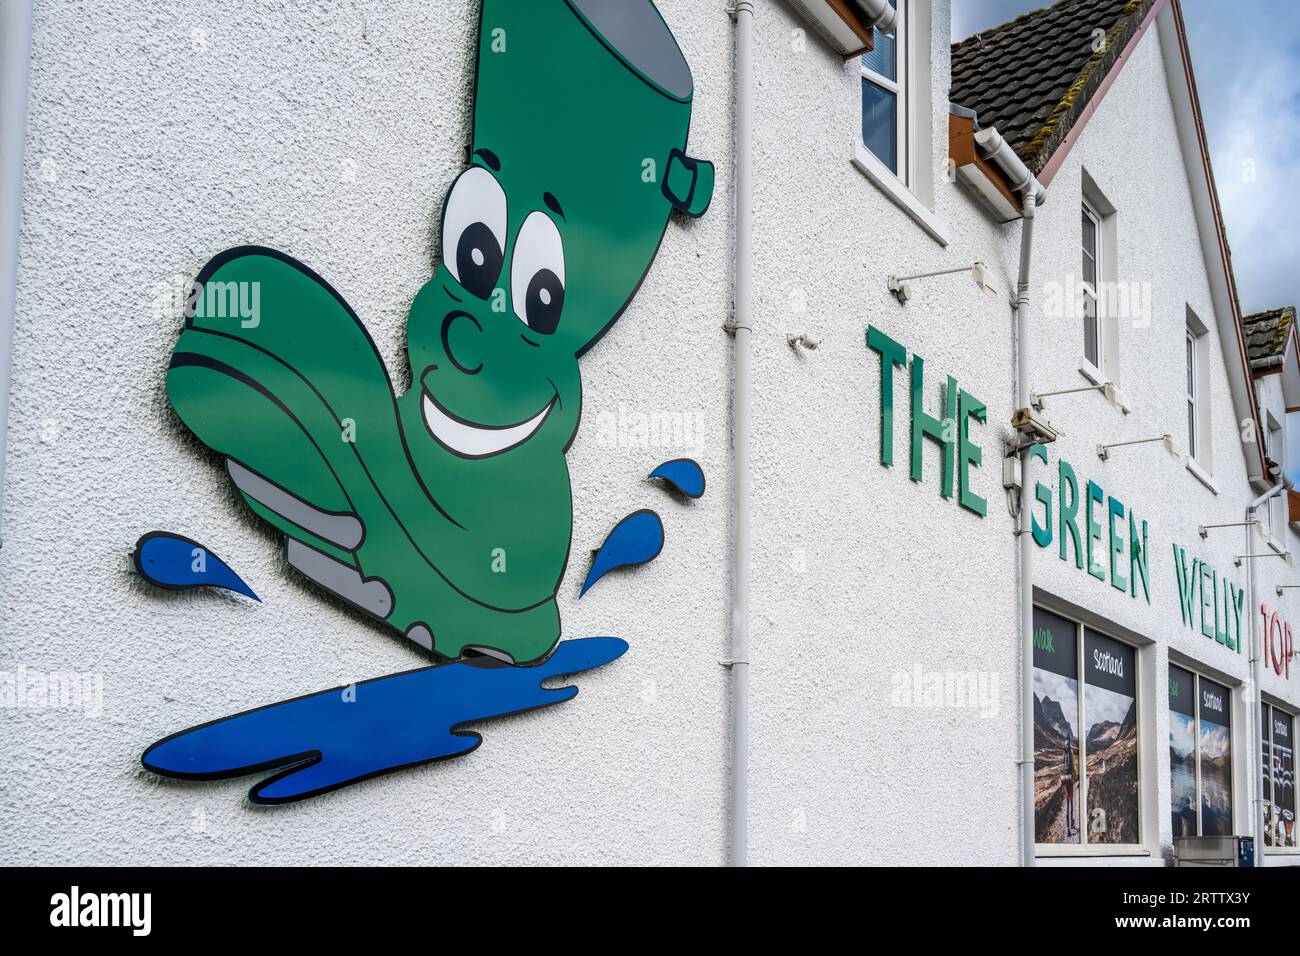 Der Green-Welly-Stopp in Tyndrum, Schottland Stockfoto